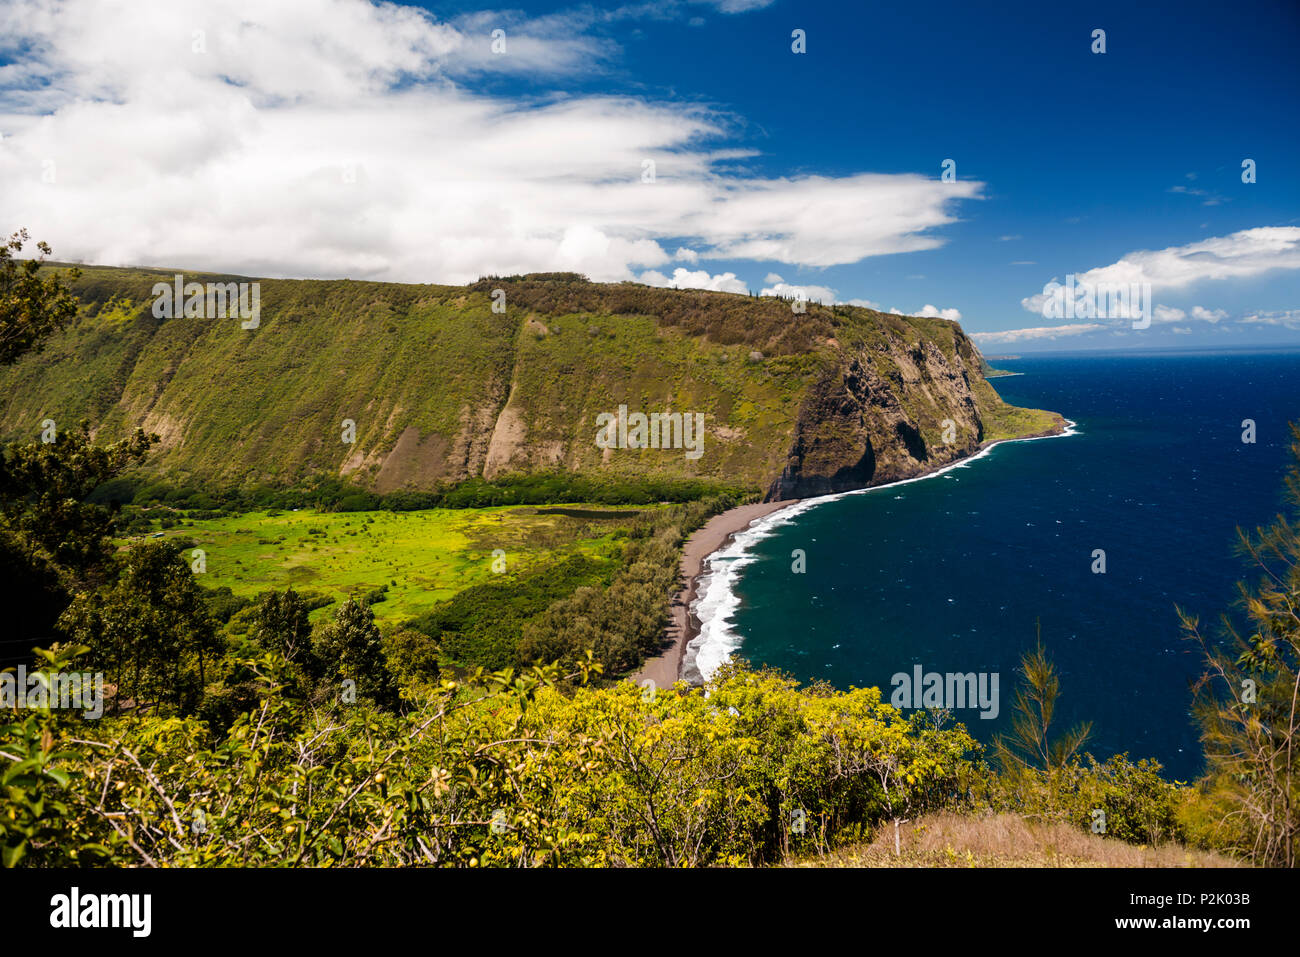 Descripción del famoso Valle Waipi'o en la Isla Grande de Hawaii y su playa de arena negra. Foto de stock